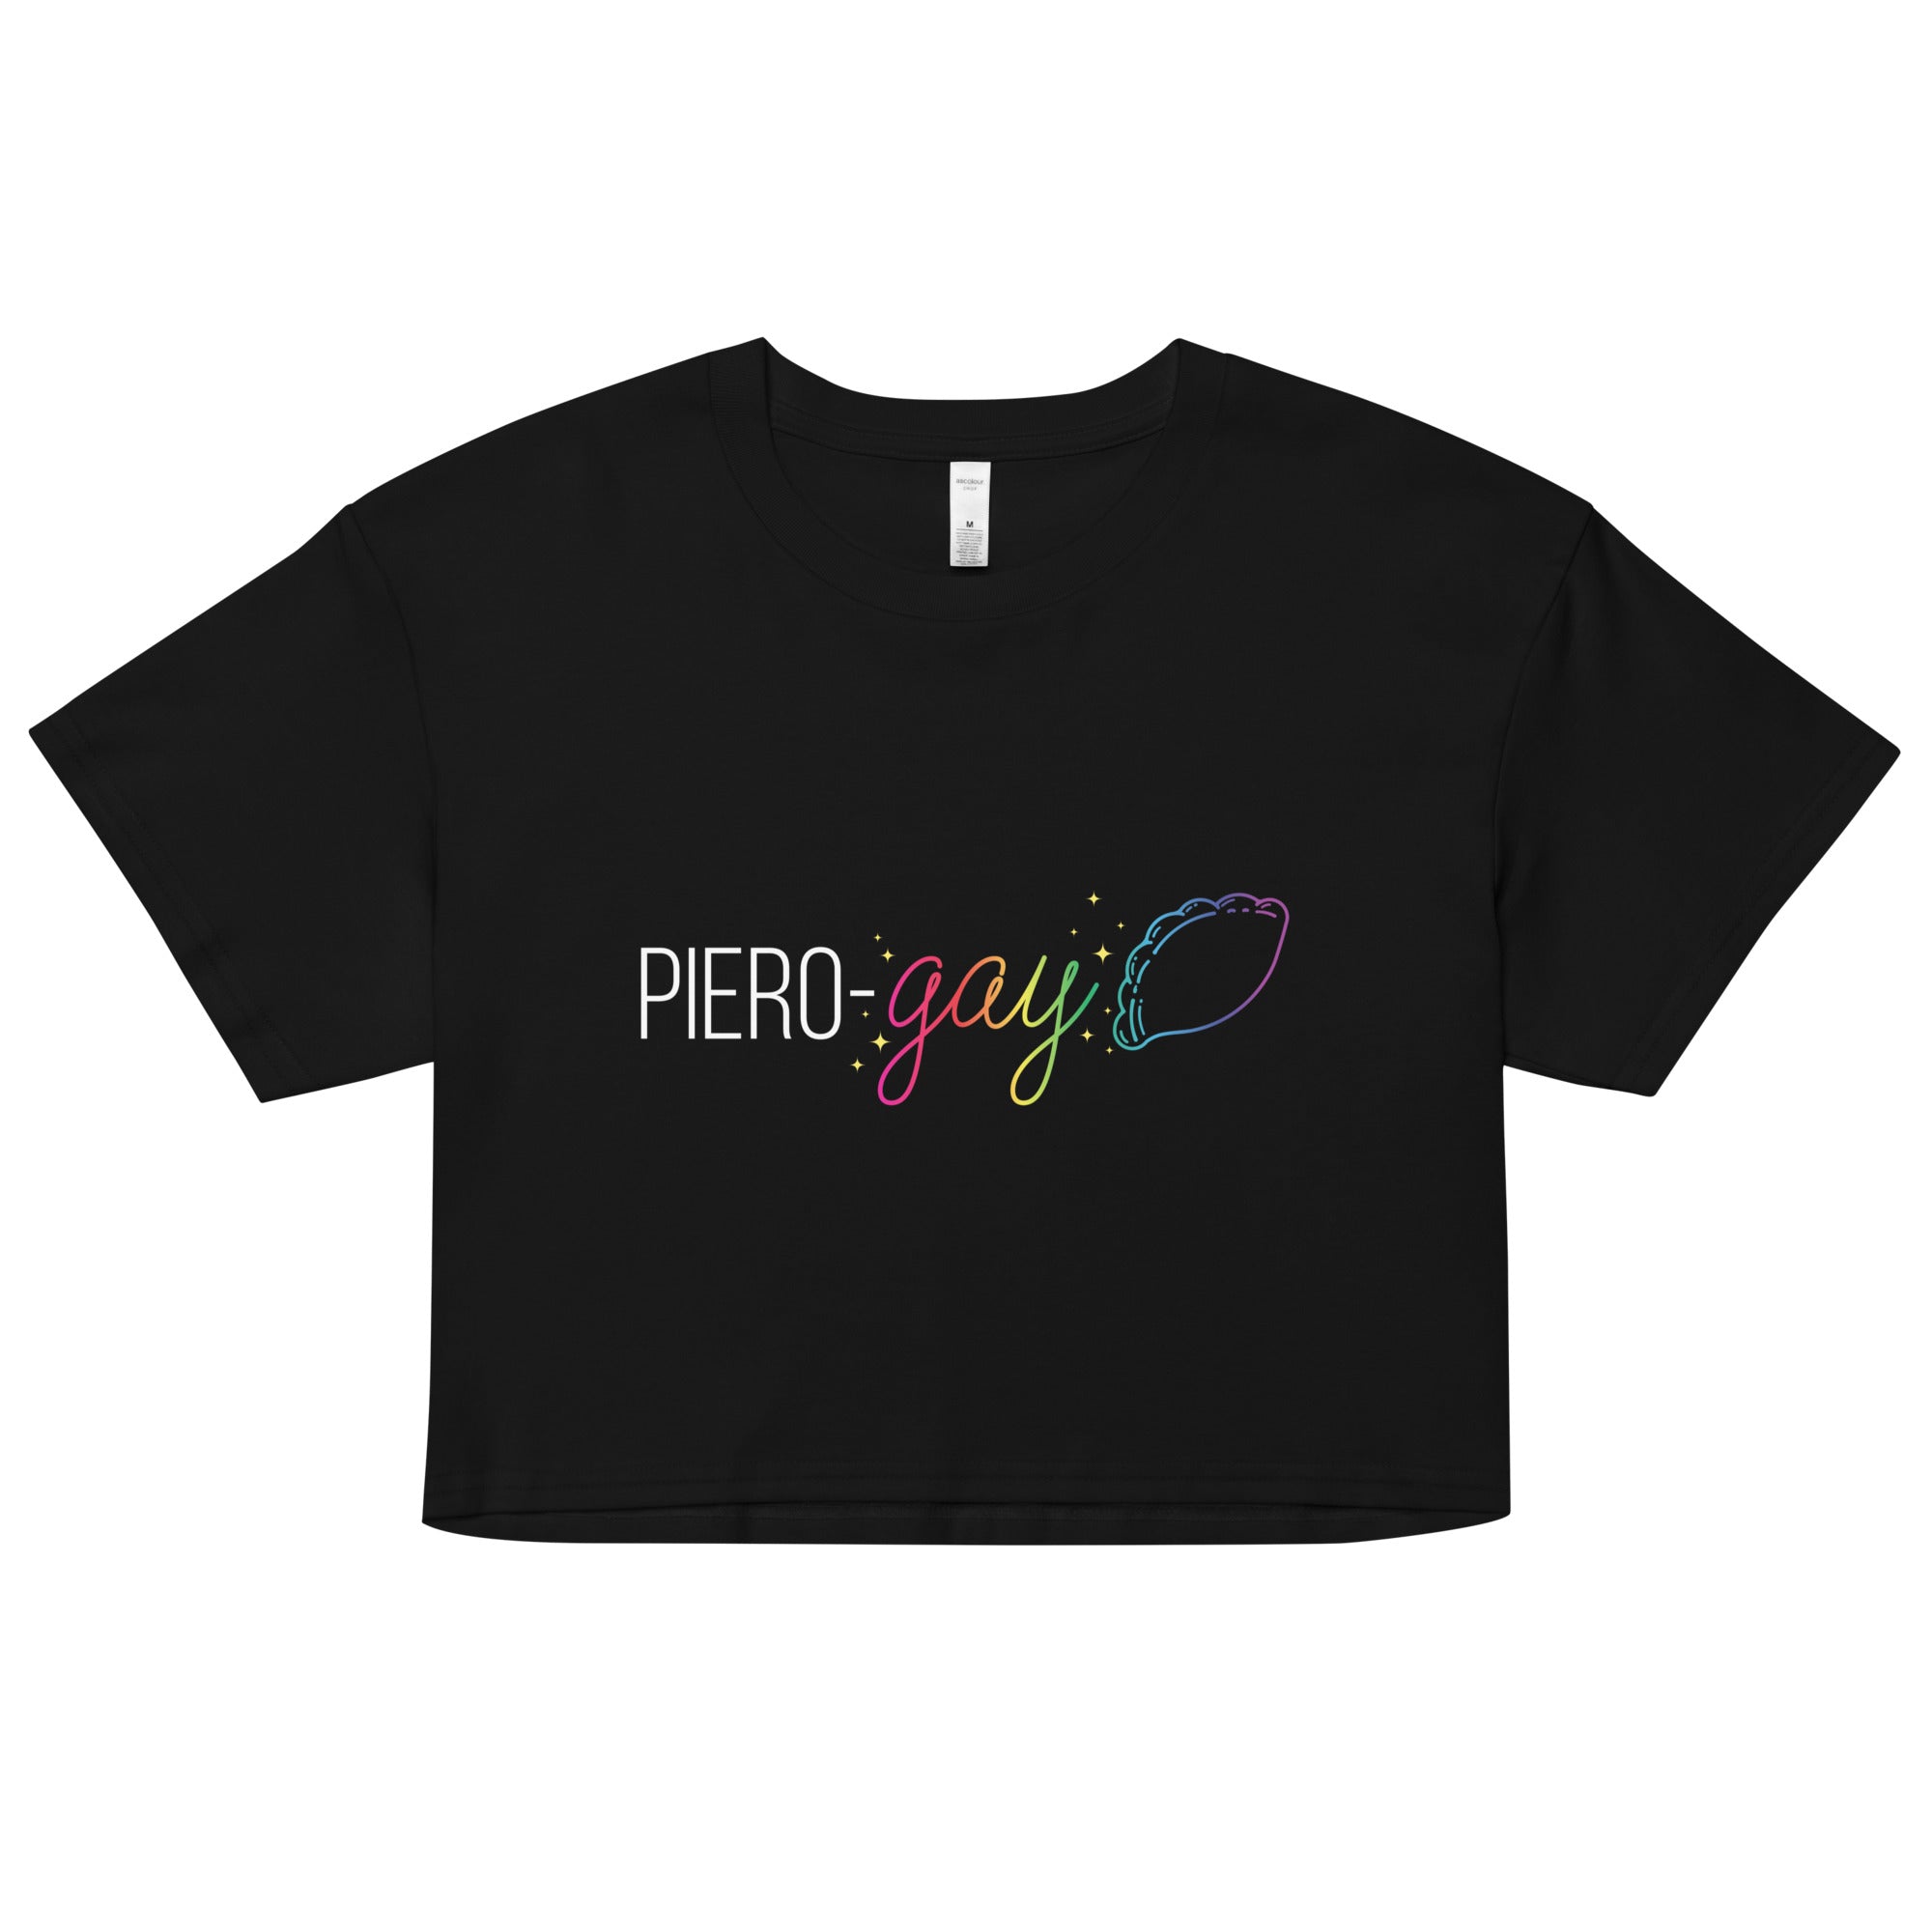 Piero-gay Crop Top